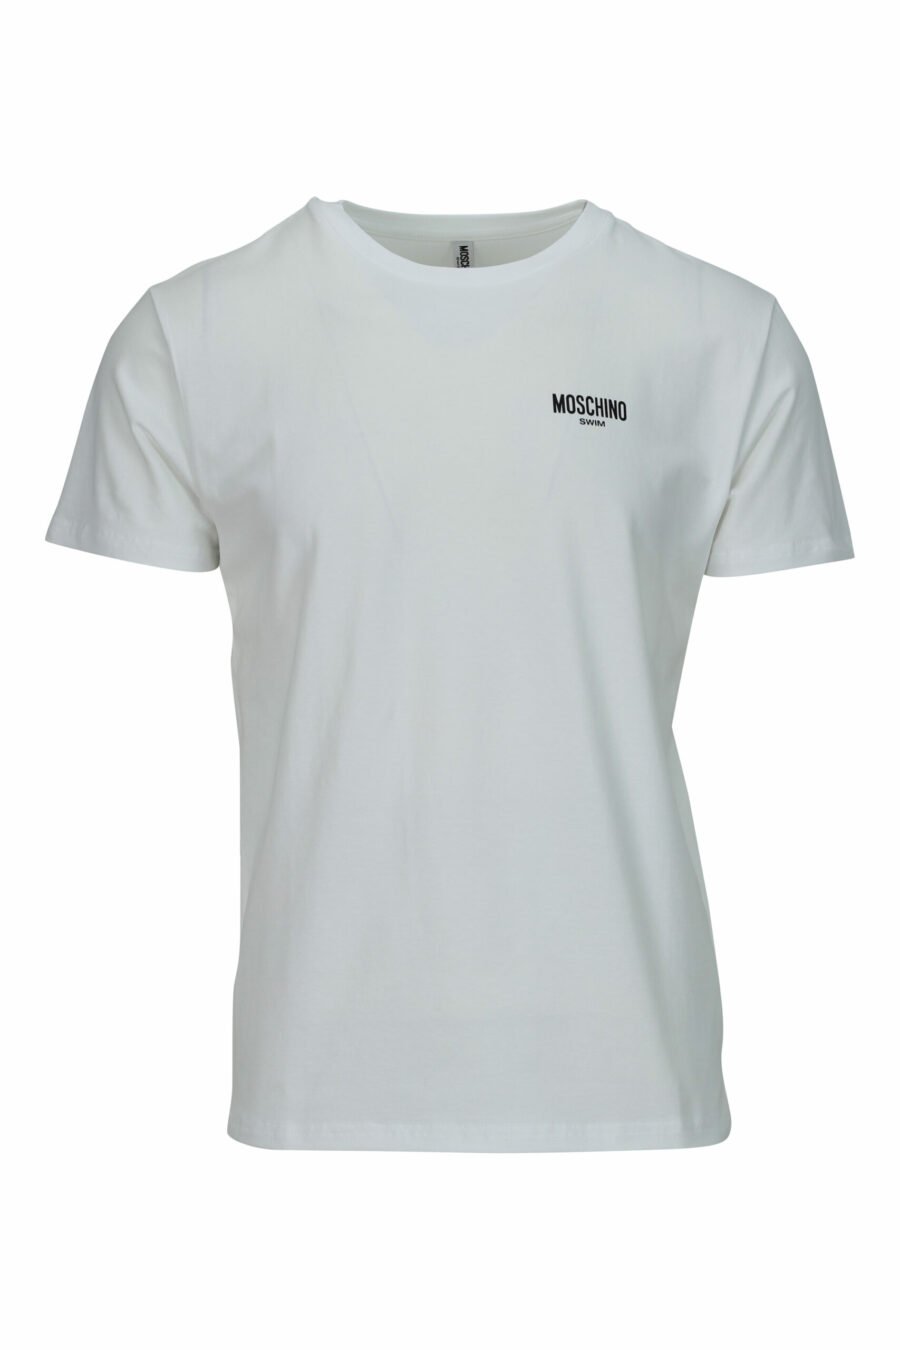 T-shirt branca com minilogo "swim" - 667113673356 scaled